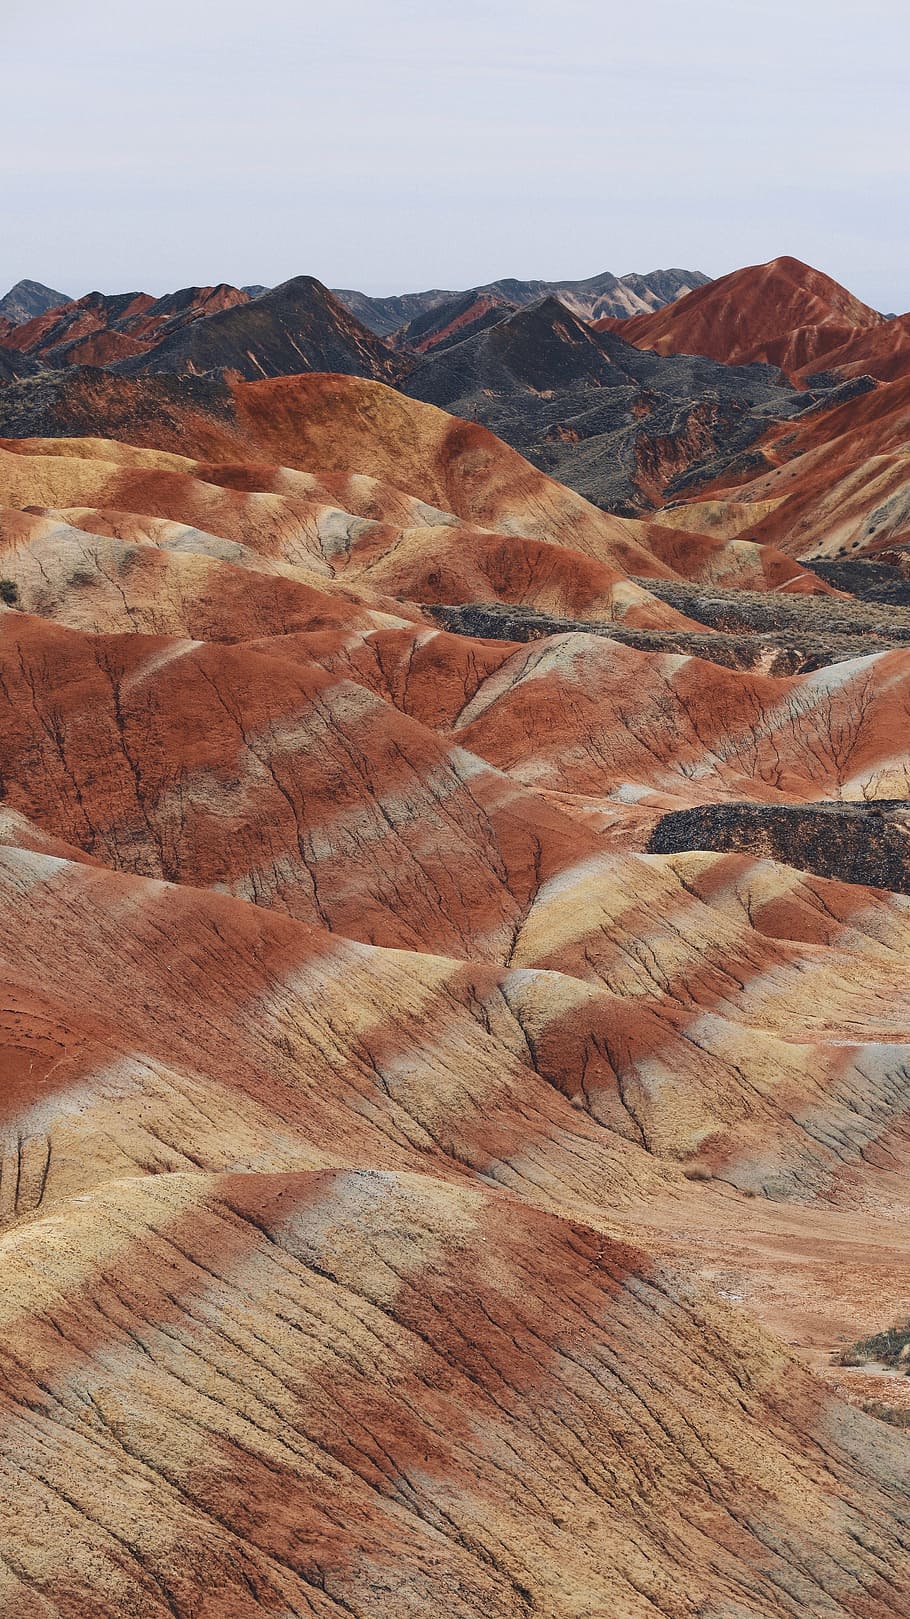 Cùng chiêm ngưỡng những địa hình núi đỏ Peru cực kì ngoạn mục và đầy mê hoặc với một cầu vồng vô cùng xinh đẹp. Từ trên cao, bạn sẽ được ngắm nhìn toàn bộ sắc màu và hình dạng của những ngọn núi này như một tác phẩm nghệ thuật. Đừng bỏ lỡ cơ hội có được khám phá những khoảnh khắc đẹp như mơ này.